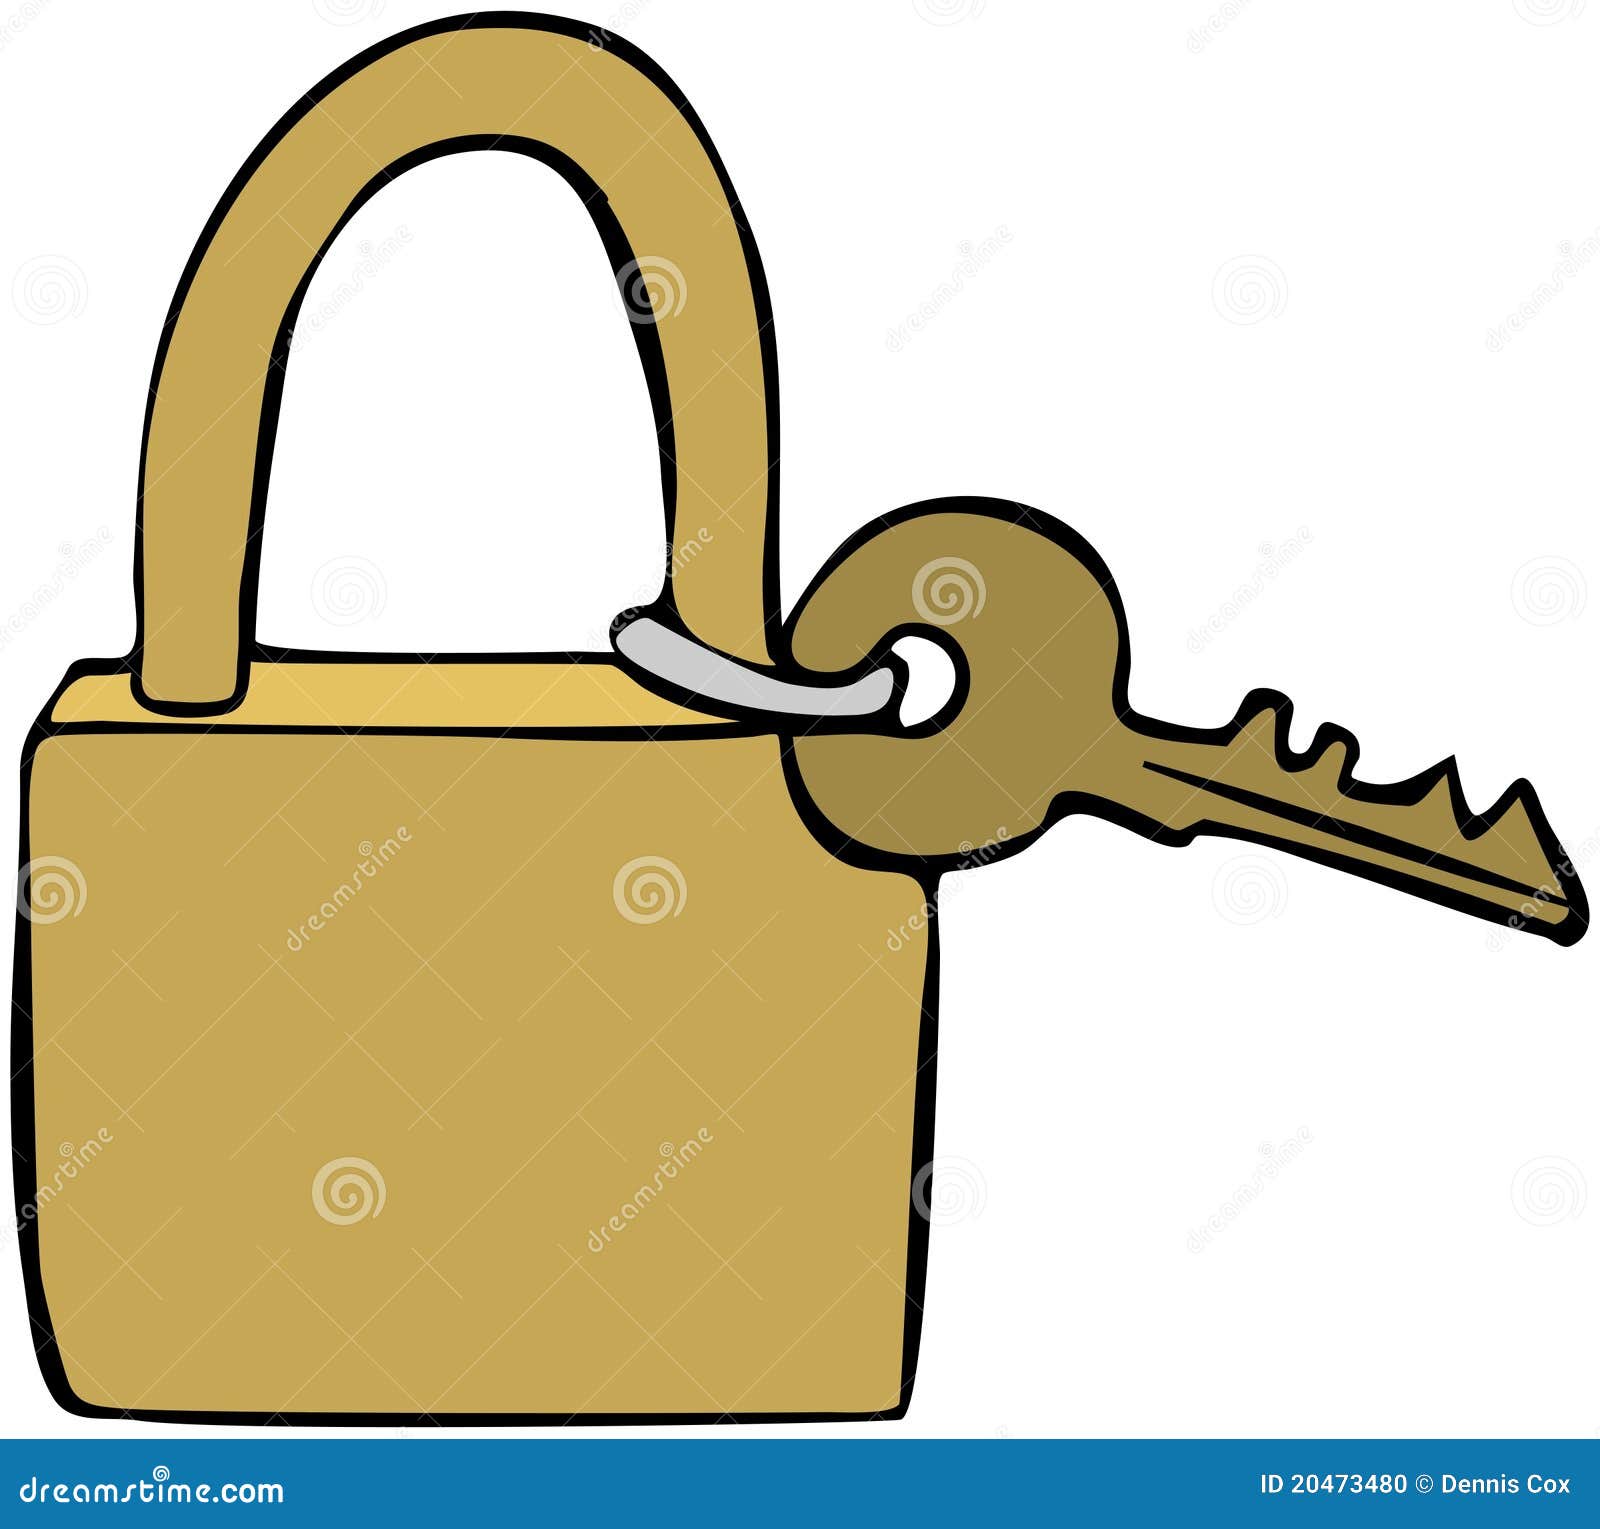 clipart keys and locks - photo #39